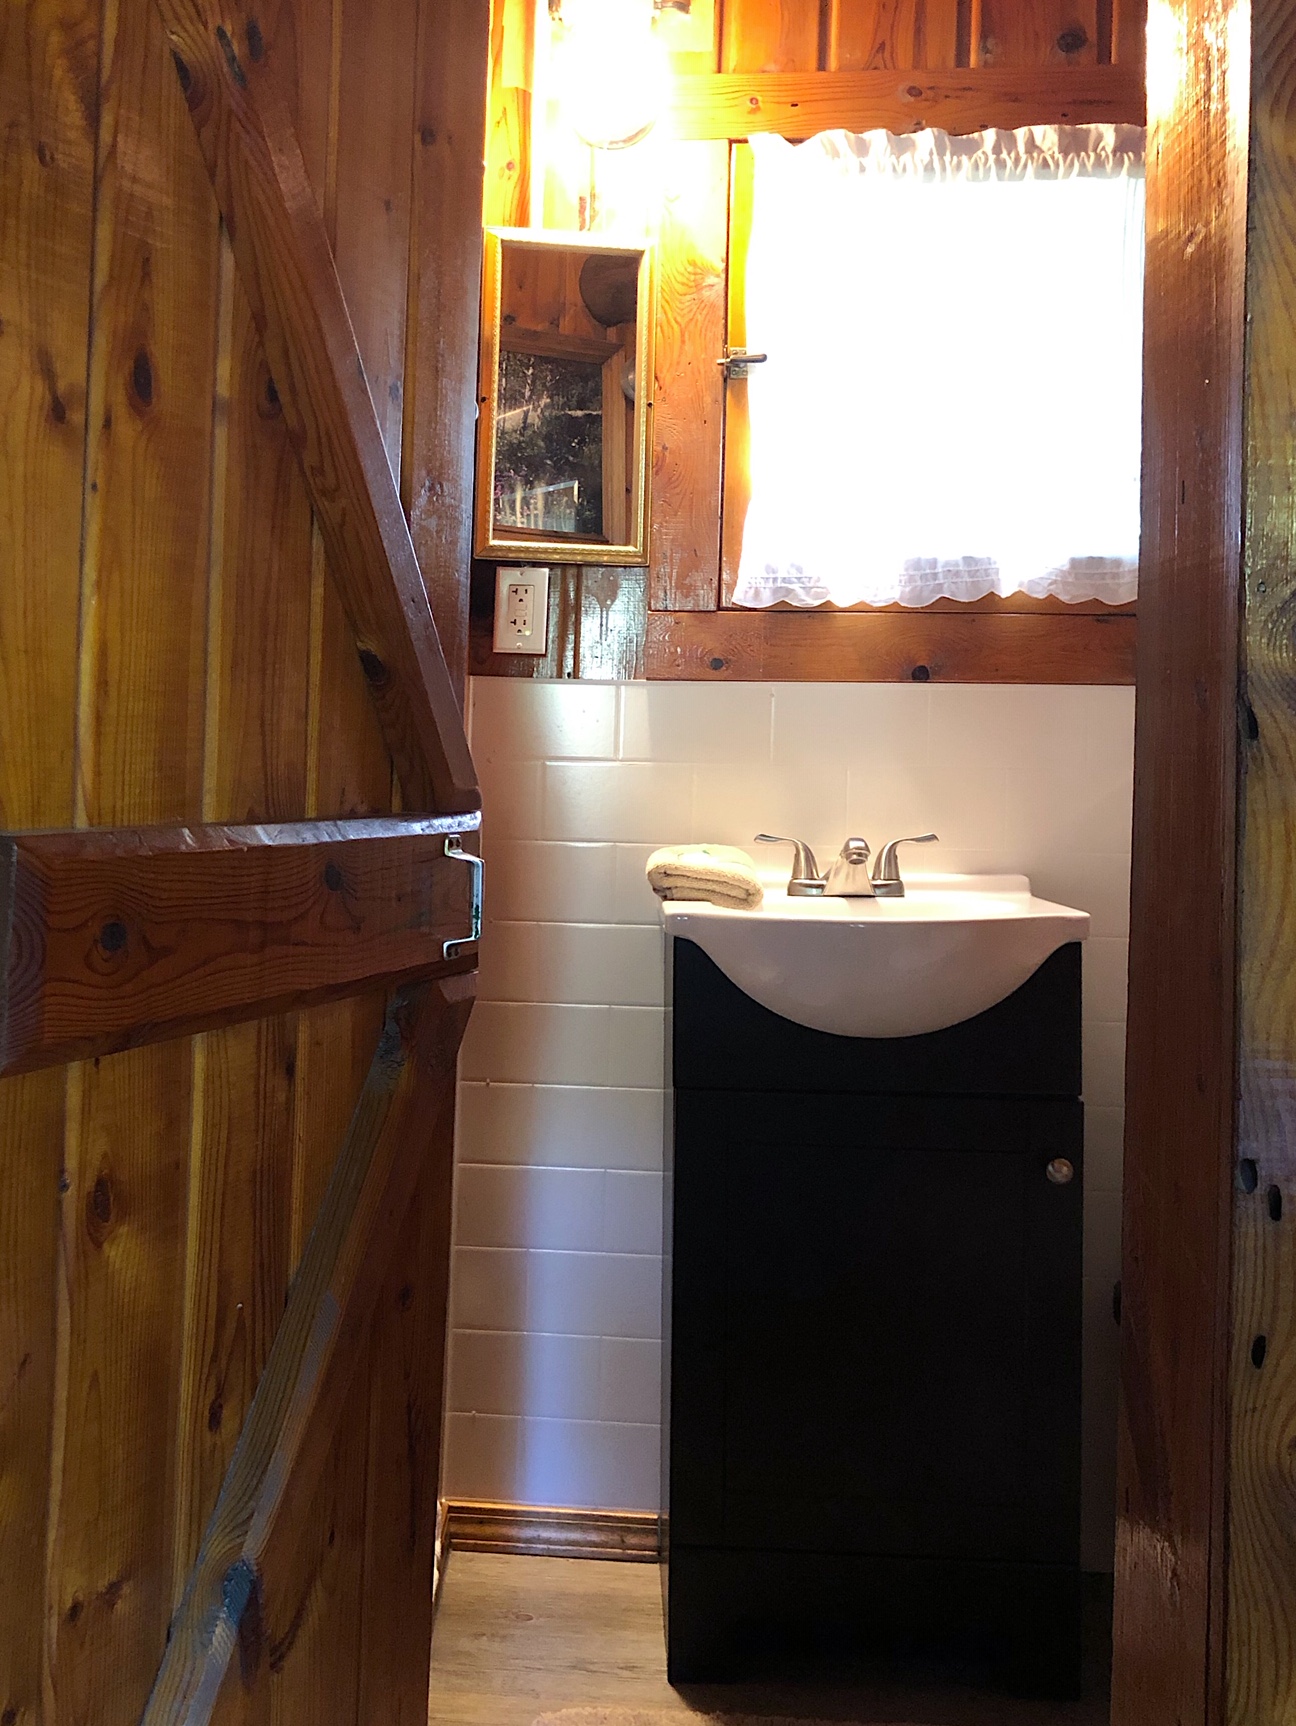 Twin Cedars Resort cabin 4 bathroom updates